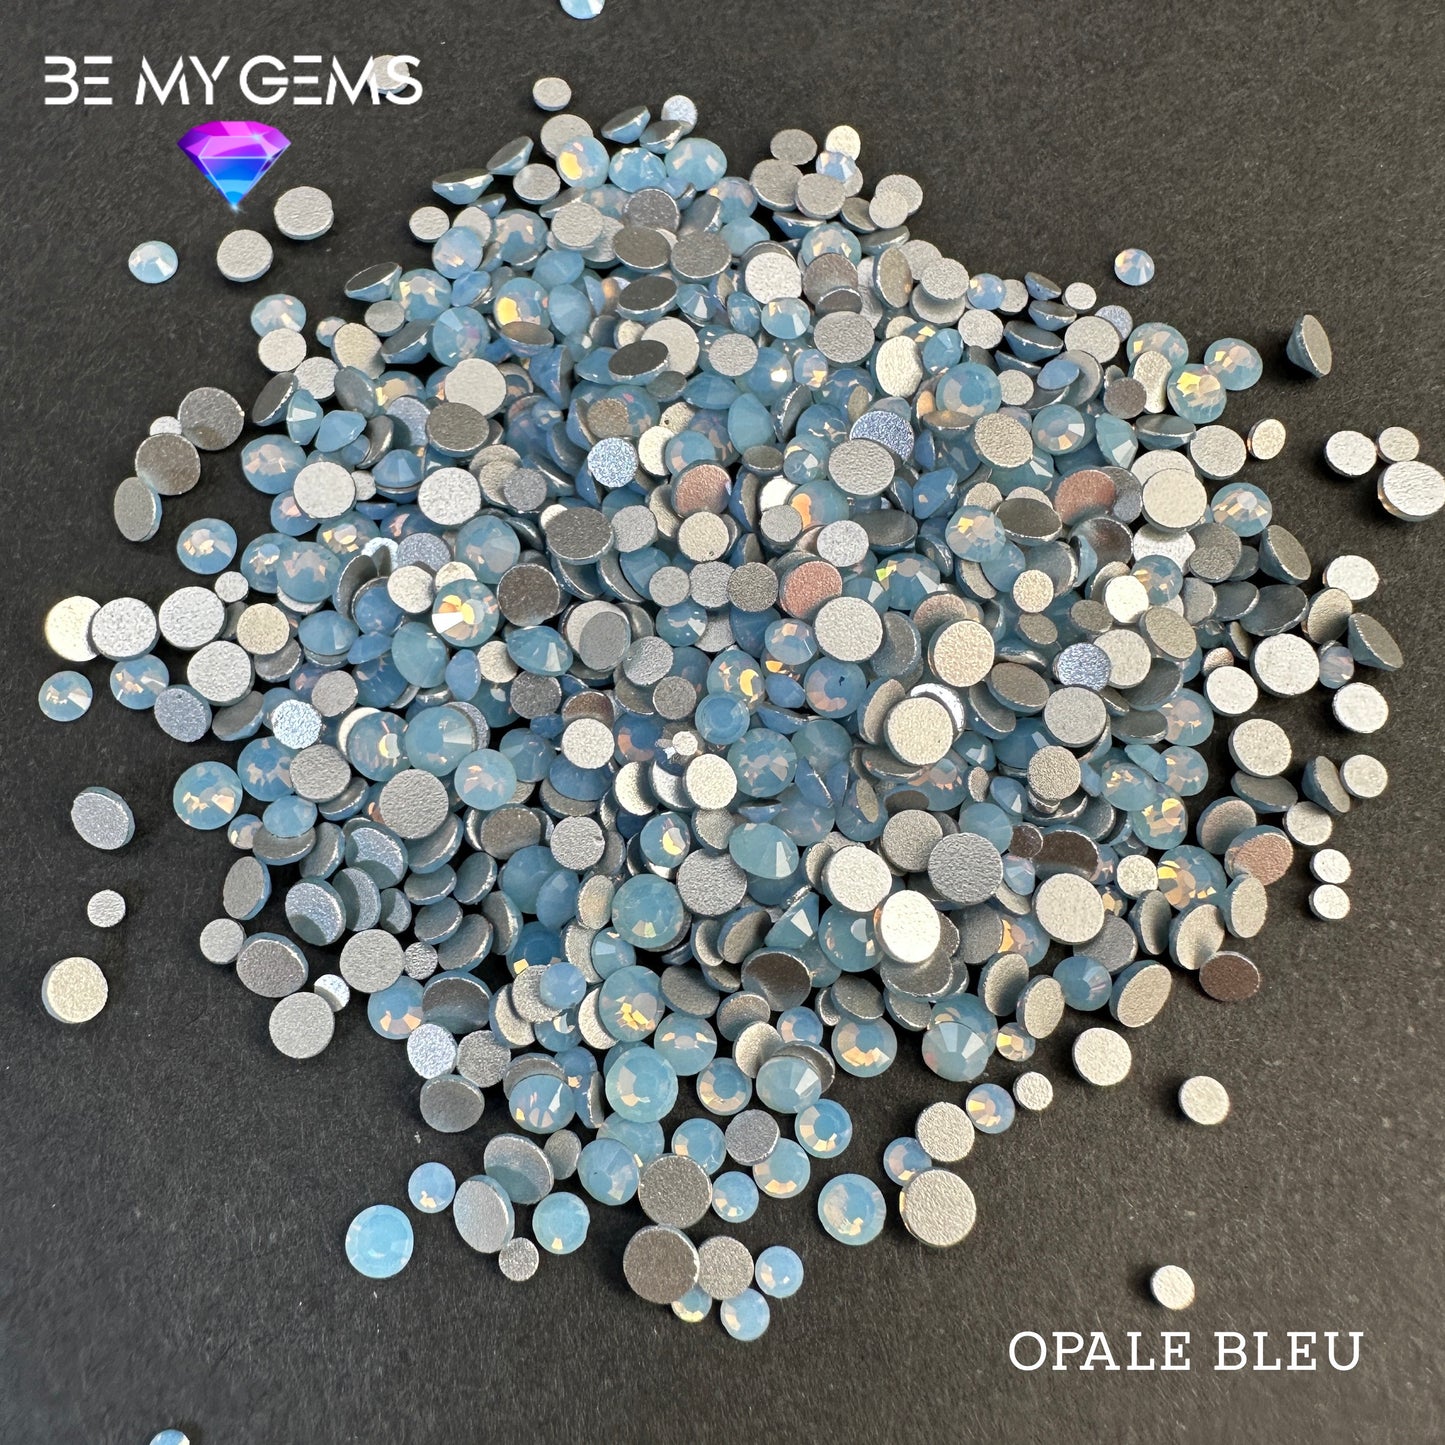 Opale Bleu